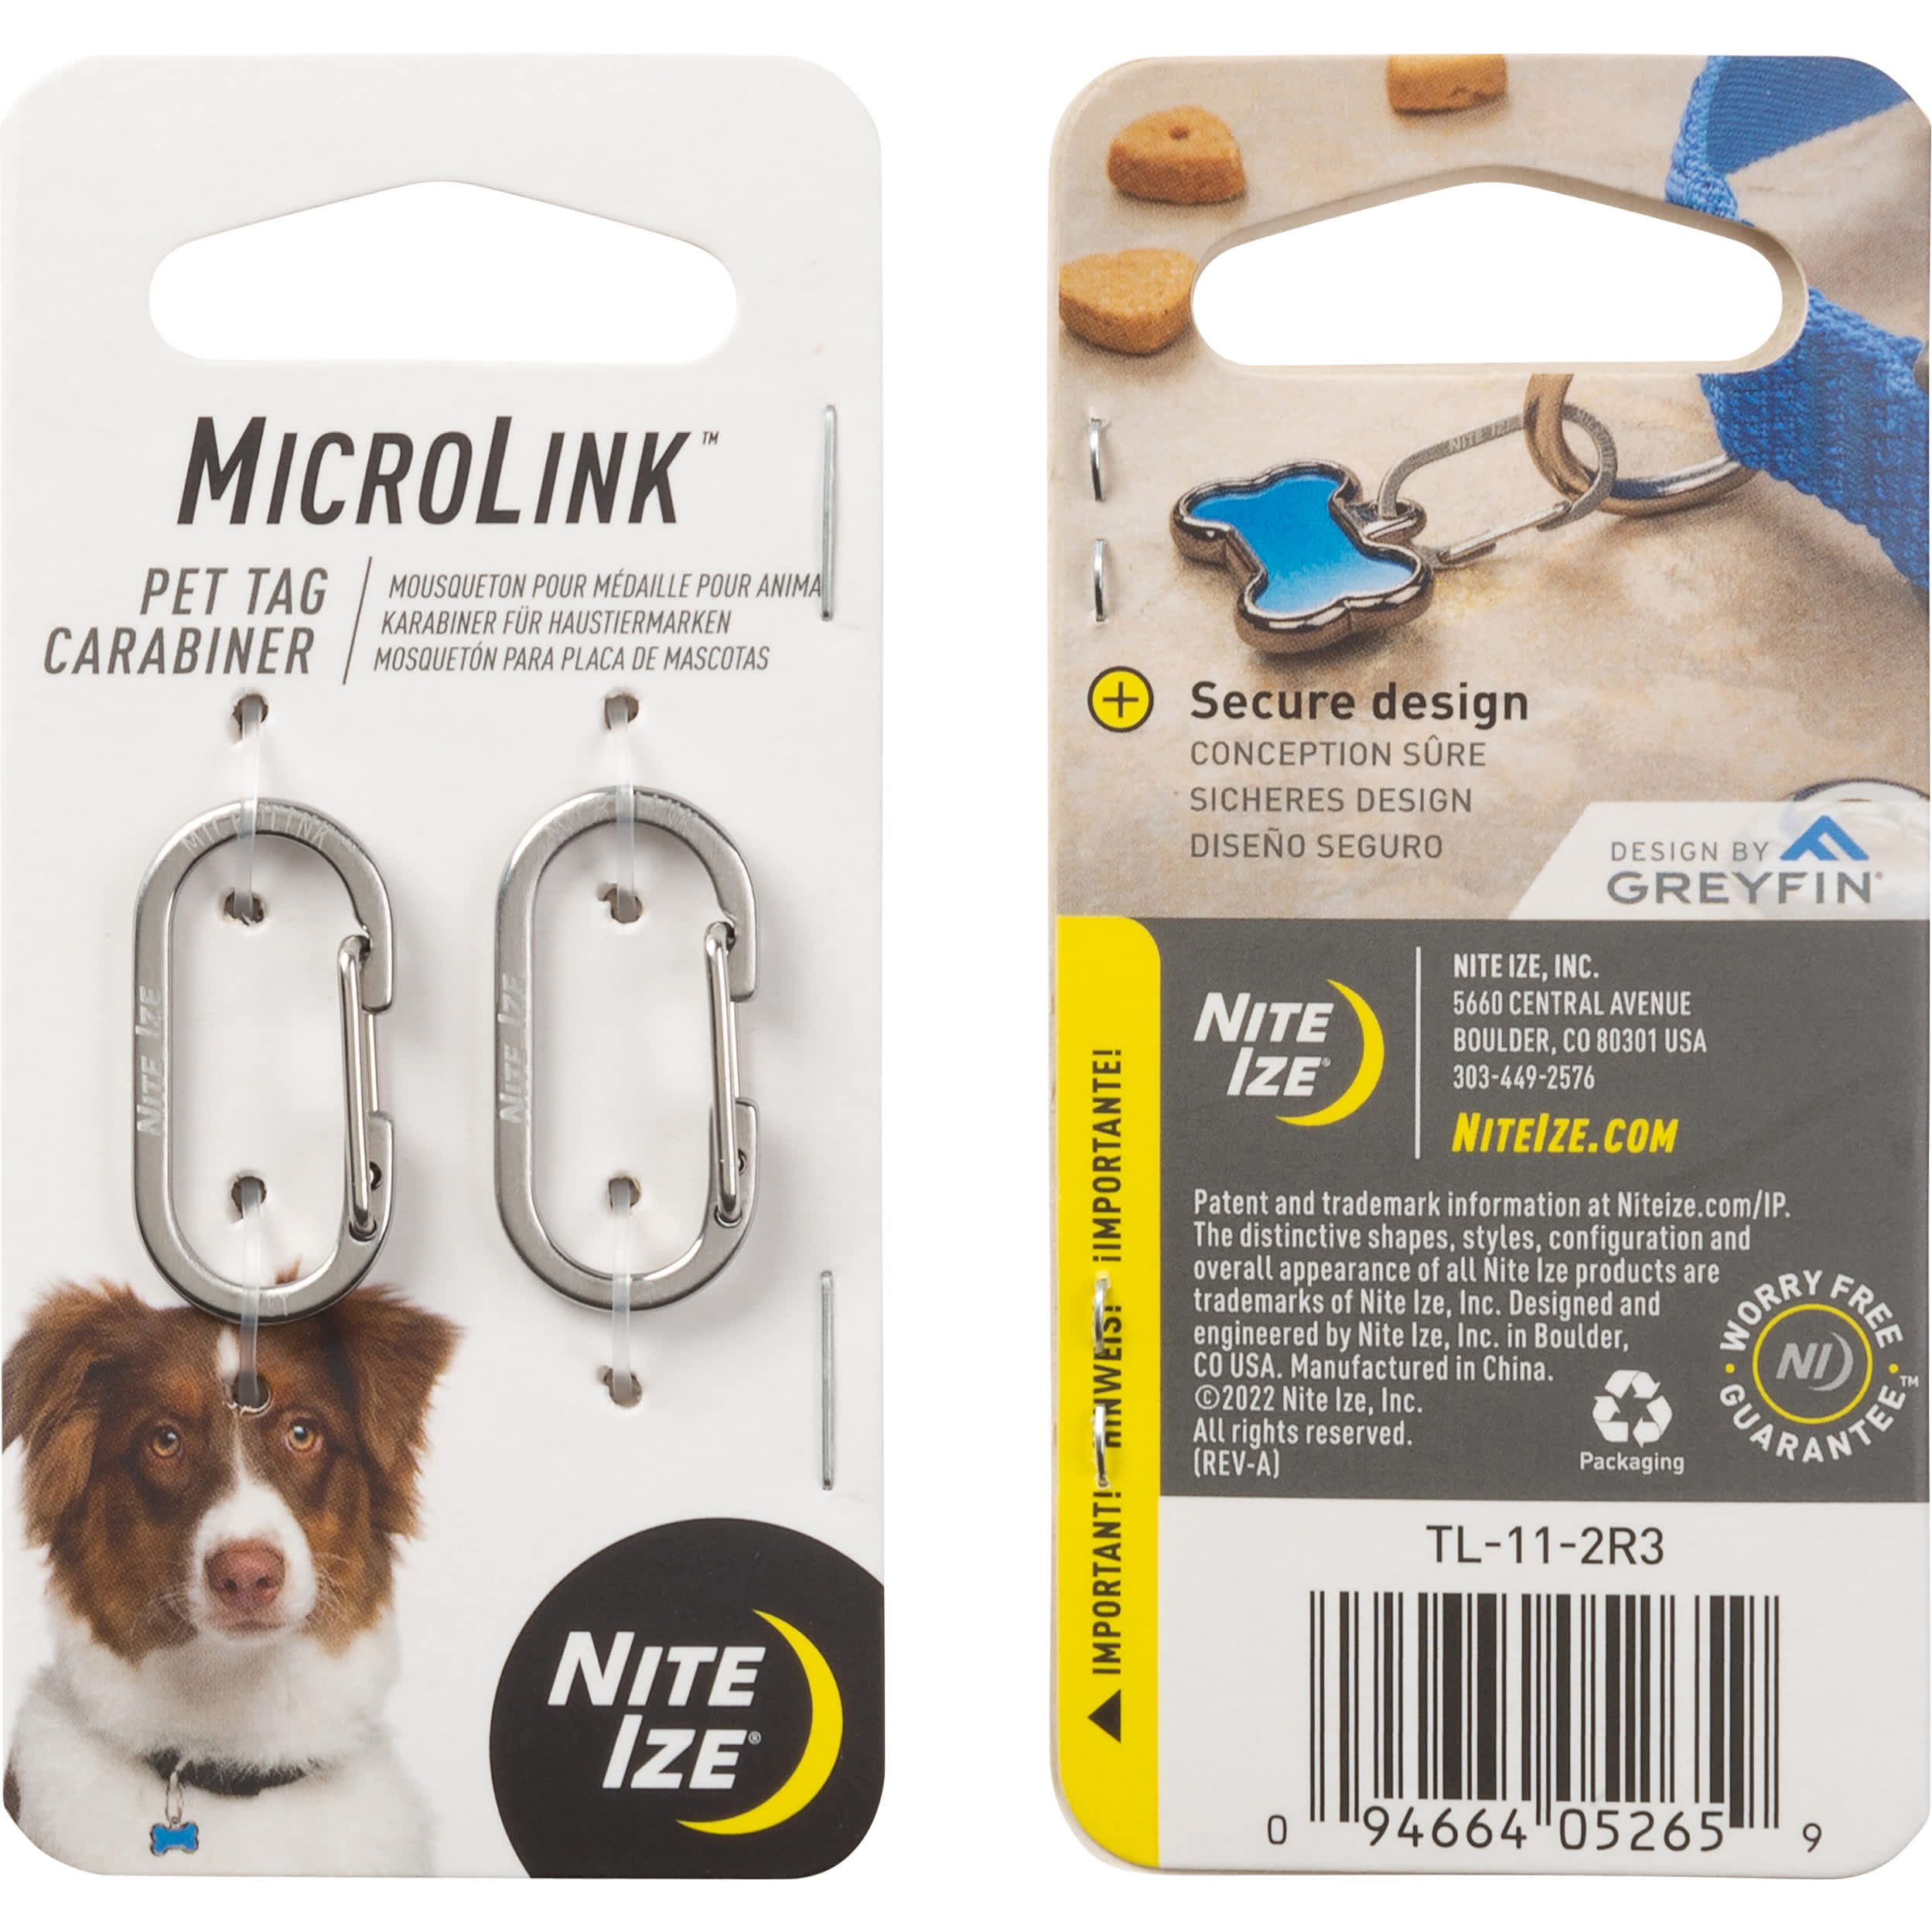 Nite Ize® MicroLink™ Pet Tag Carabiner